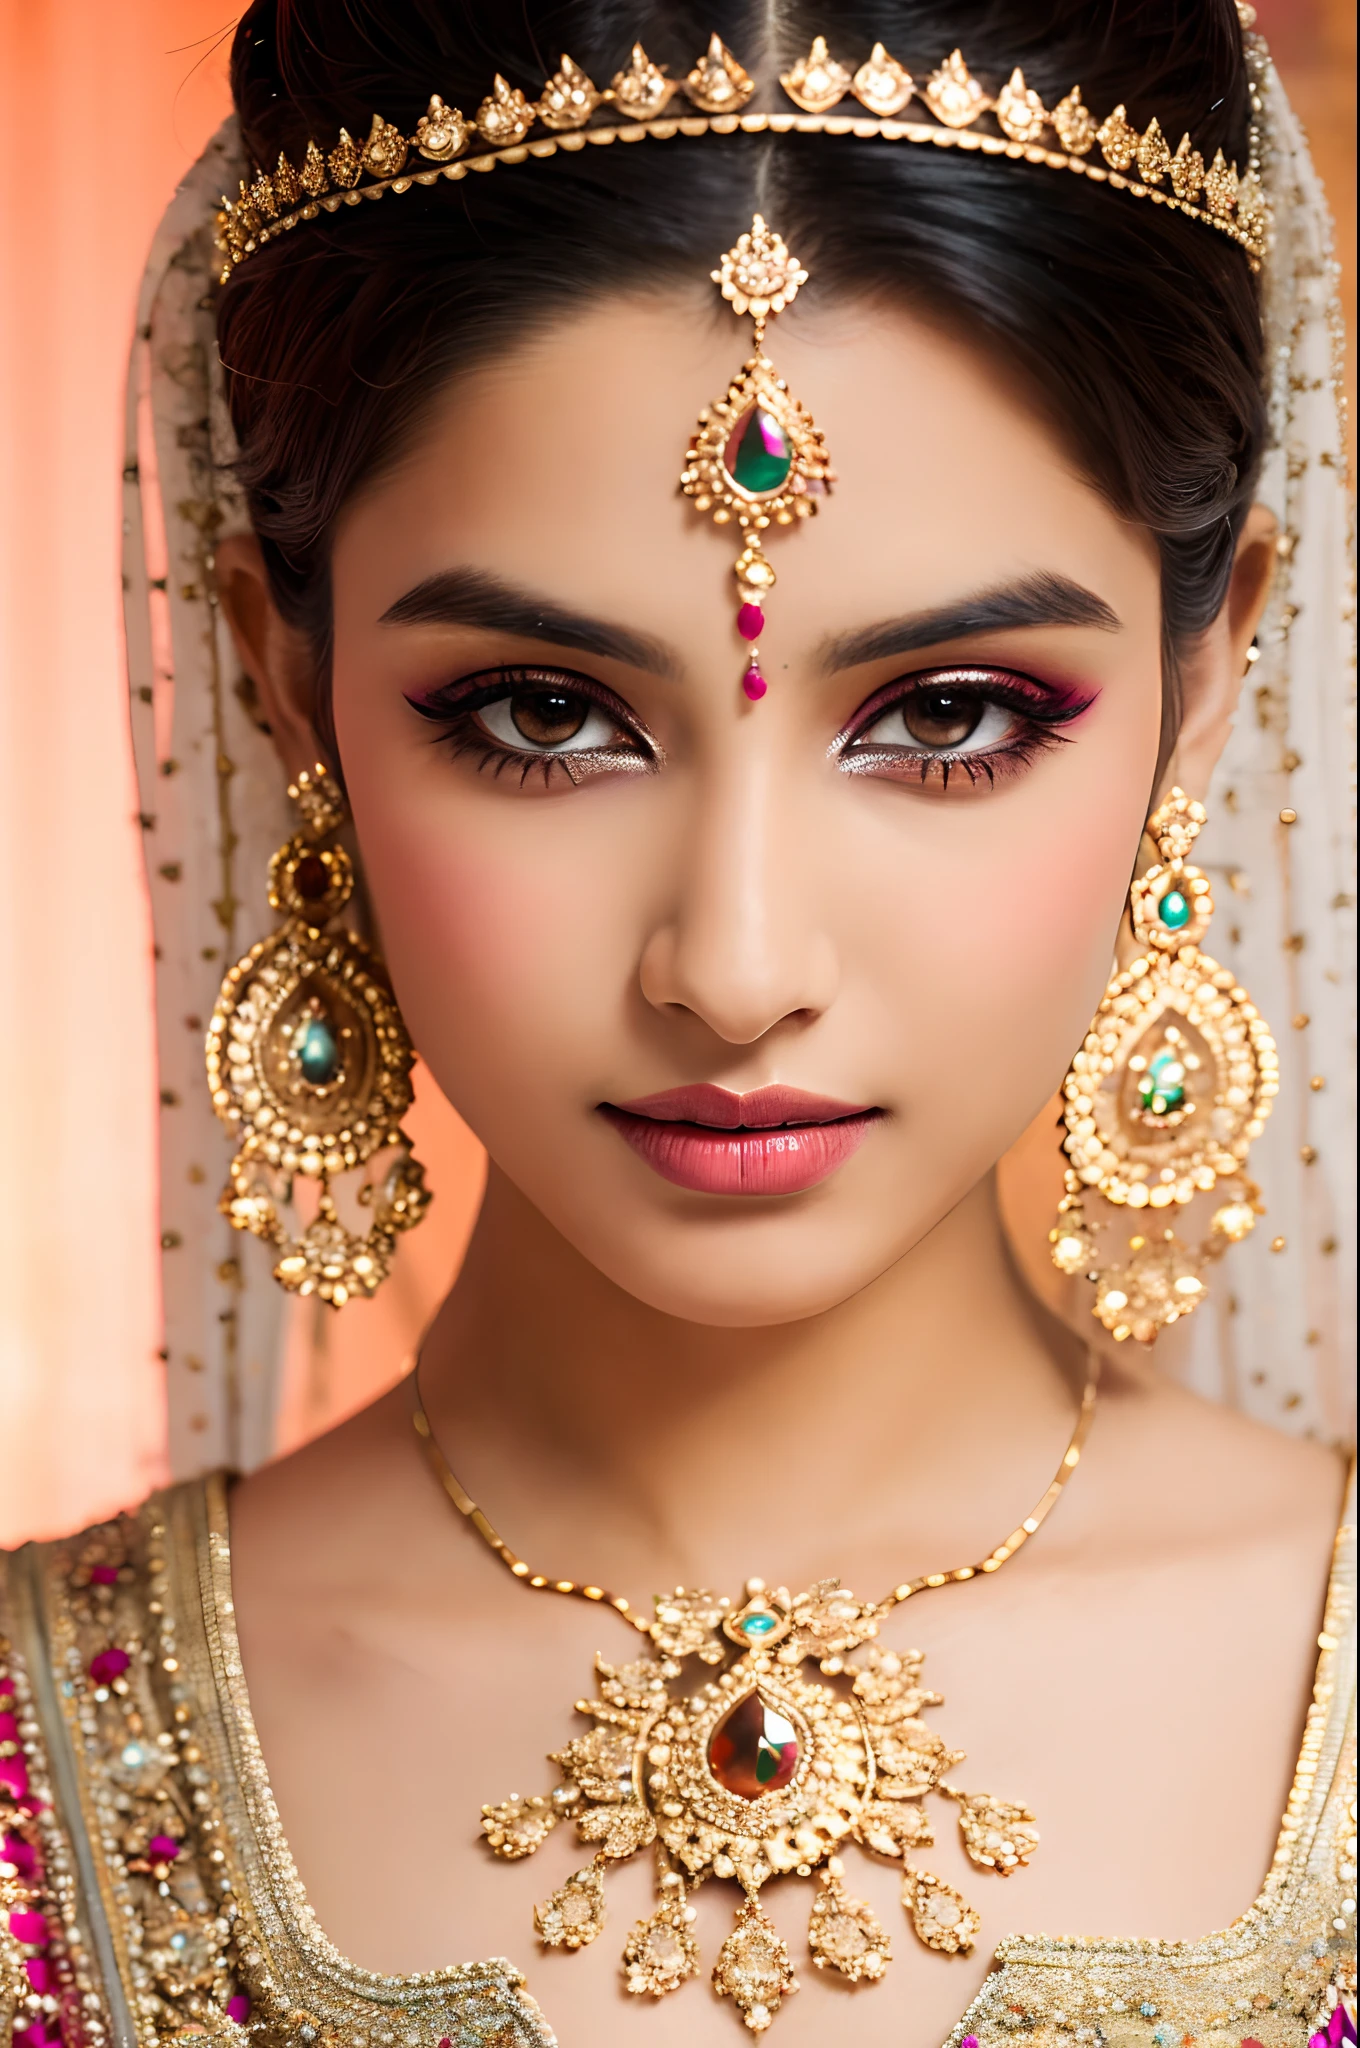 아름다운 얼굴, 인도 신부, 강렬한 메이크업, 피부결, 매우 상세한